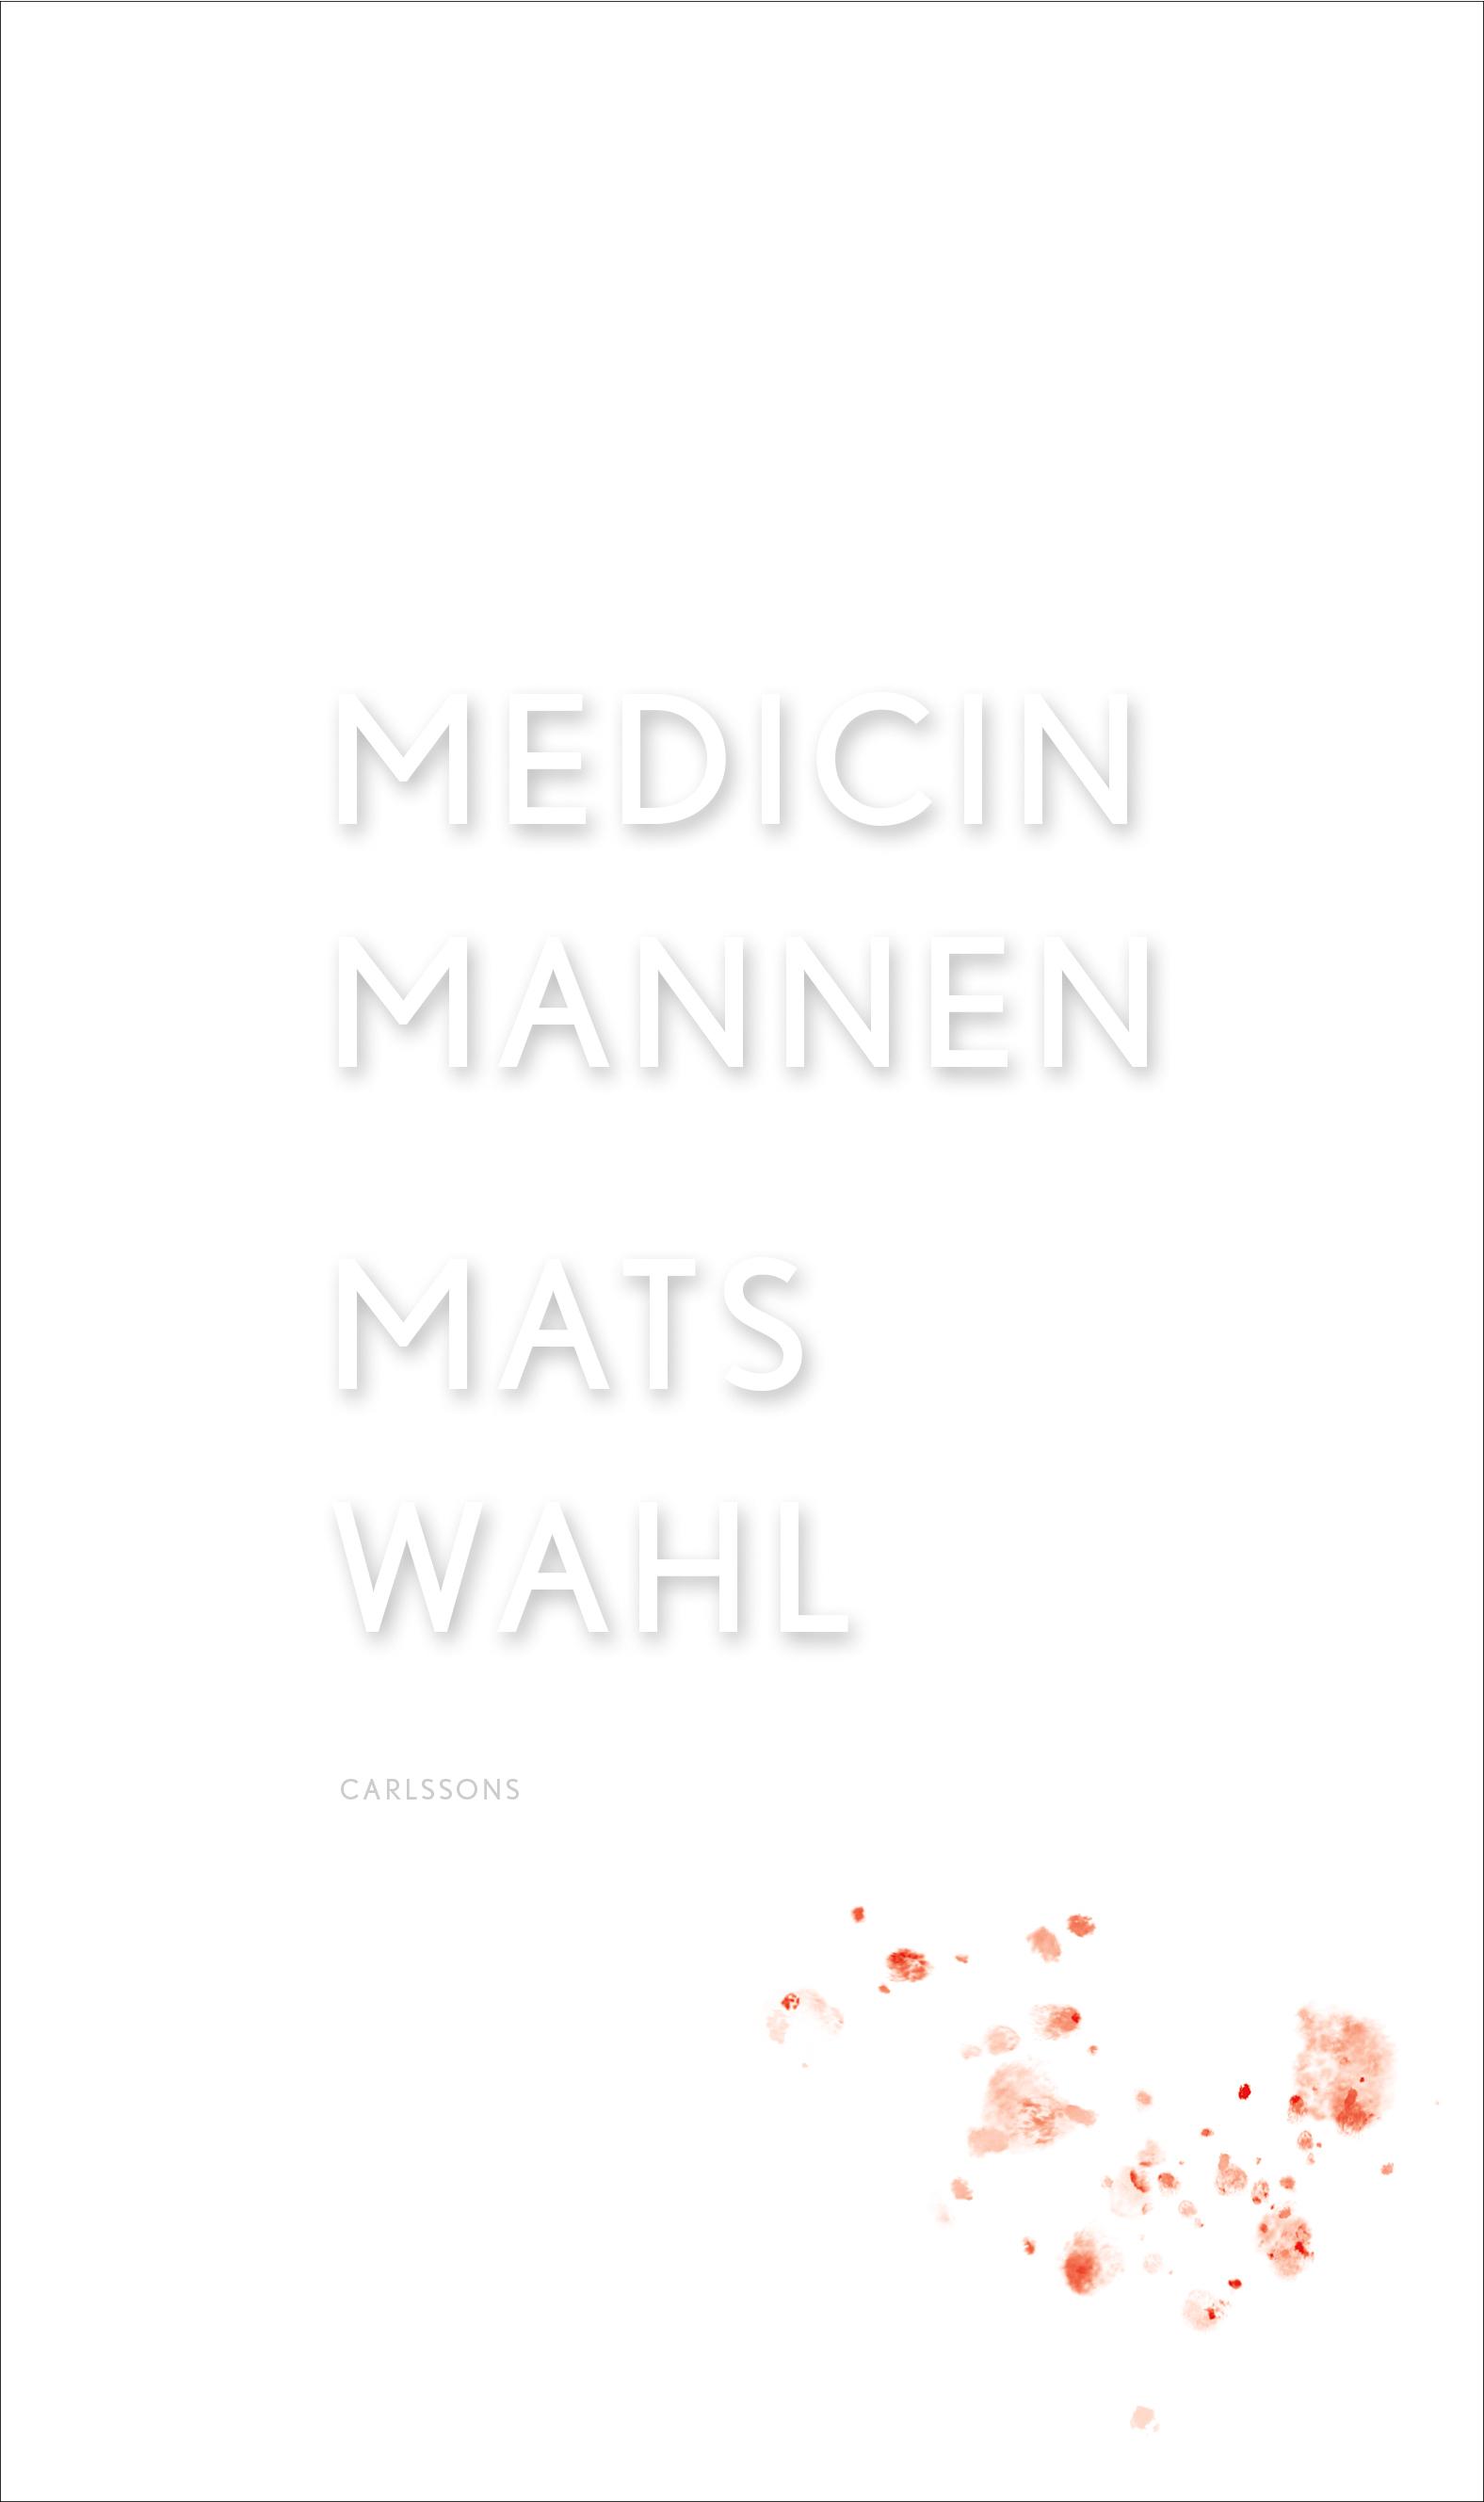  Den självbiografiska boken "Medicinmannen" av författaren Mats Wahl från Carlssons bokförlag.